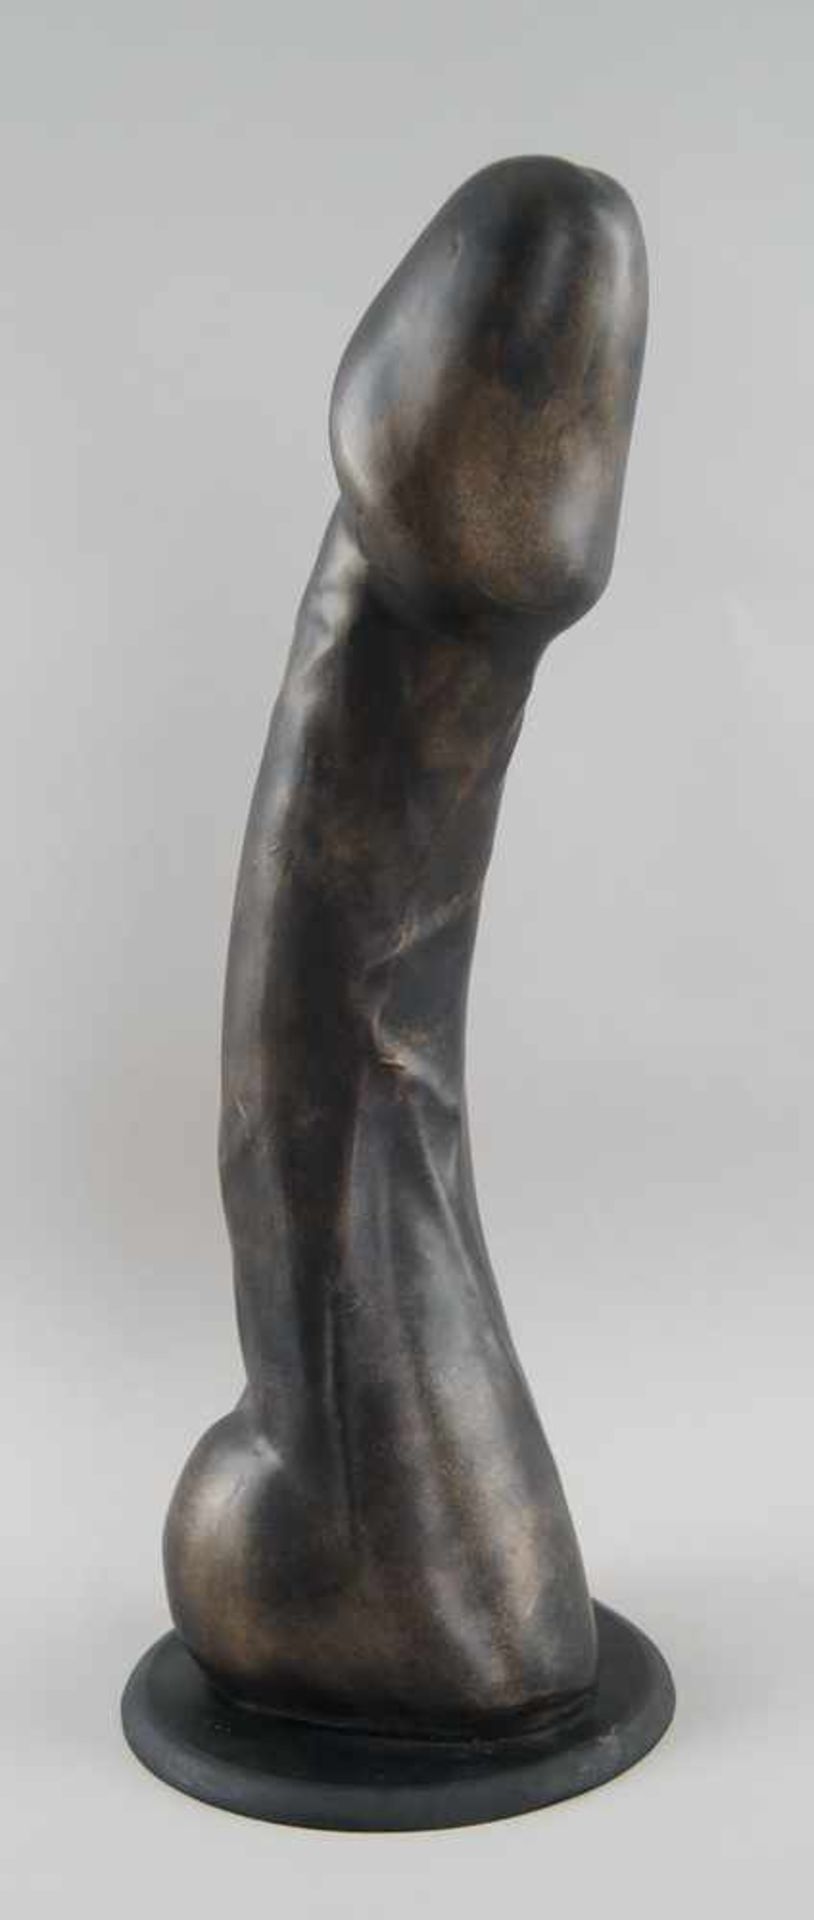 Übergrosser Phallus, Holz geschnitzt, gefasst, H 51 cm